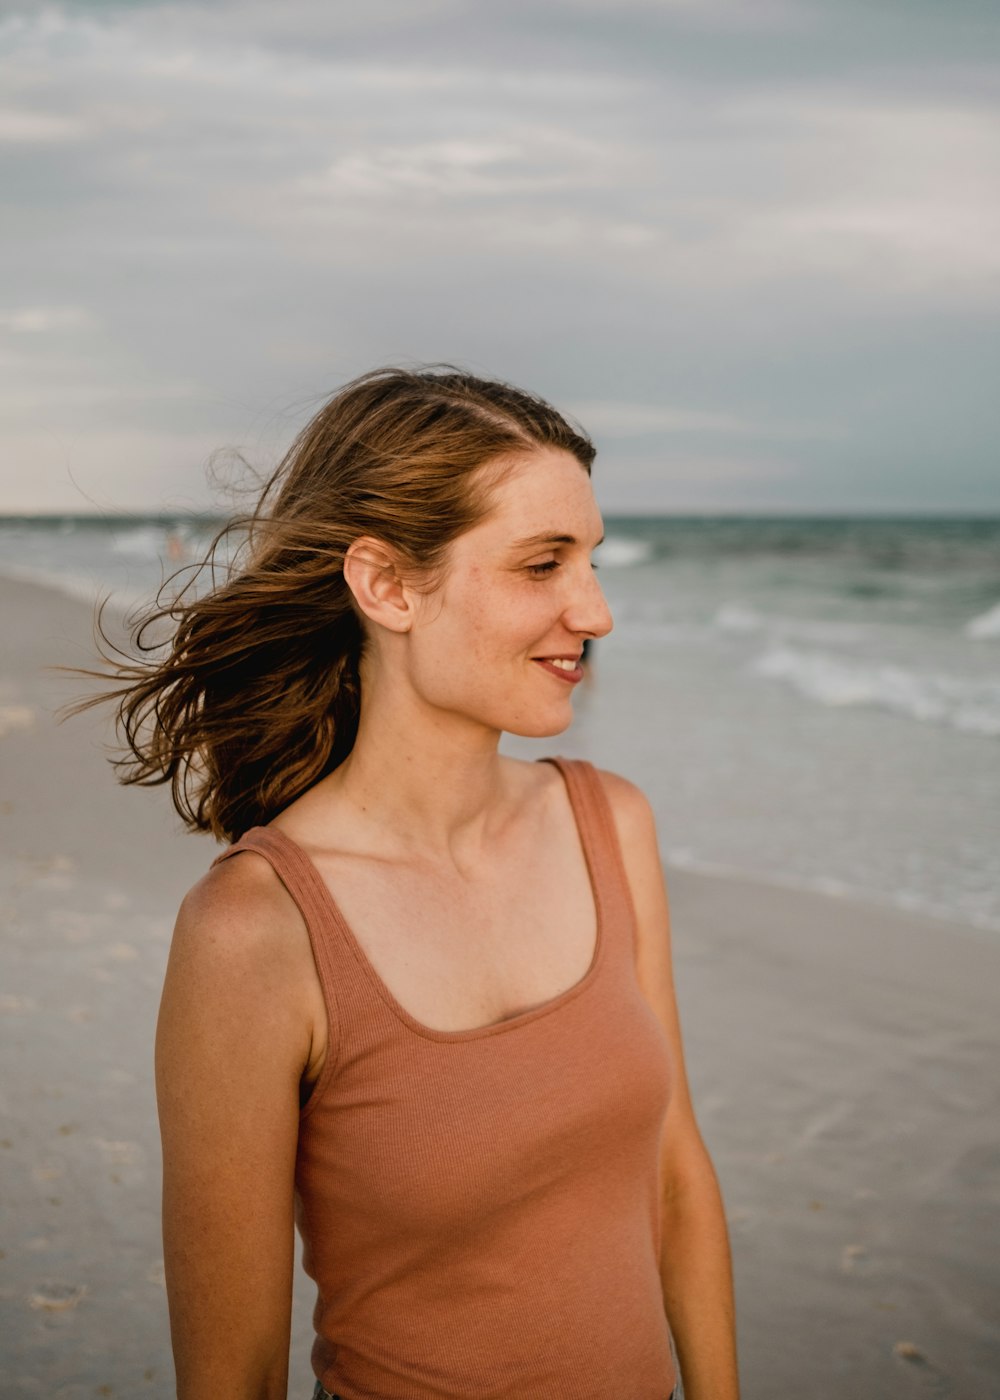 a woman on a beach